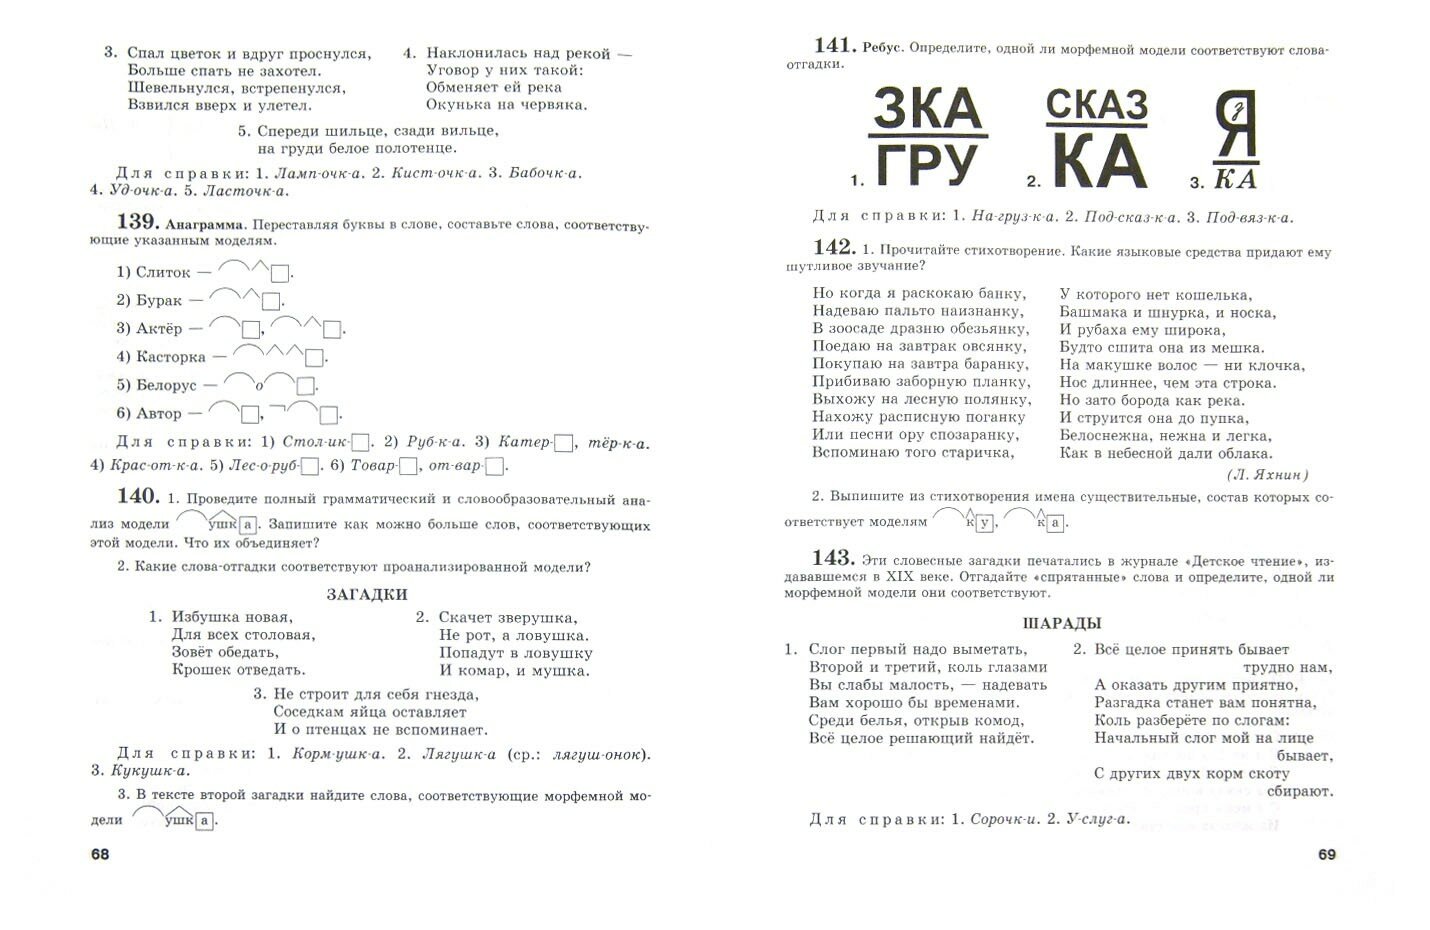 Работа с морфемными моделями слов на уроках русского языка в 5-9 классах. Пособие для учителя - фото №2